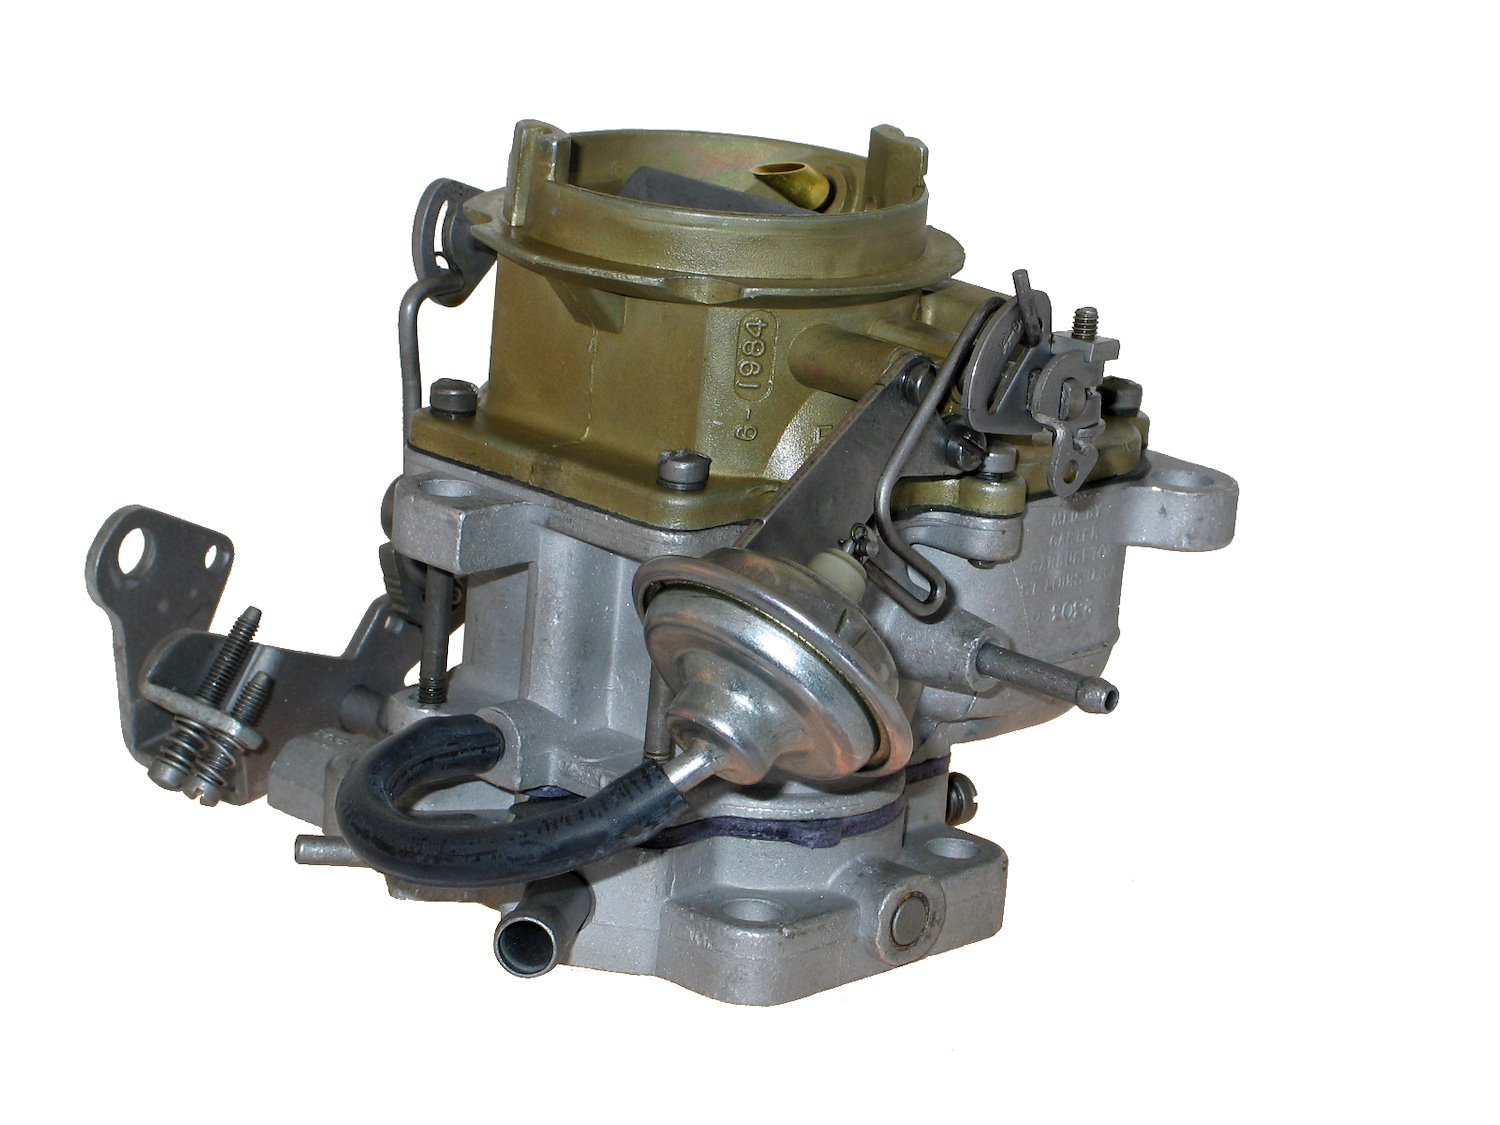 6-6117 Carter Remanufactured Carburetor, BBD-Style